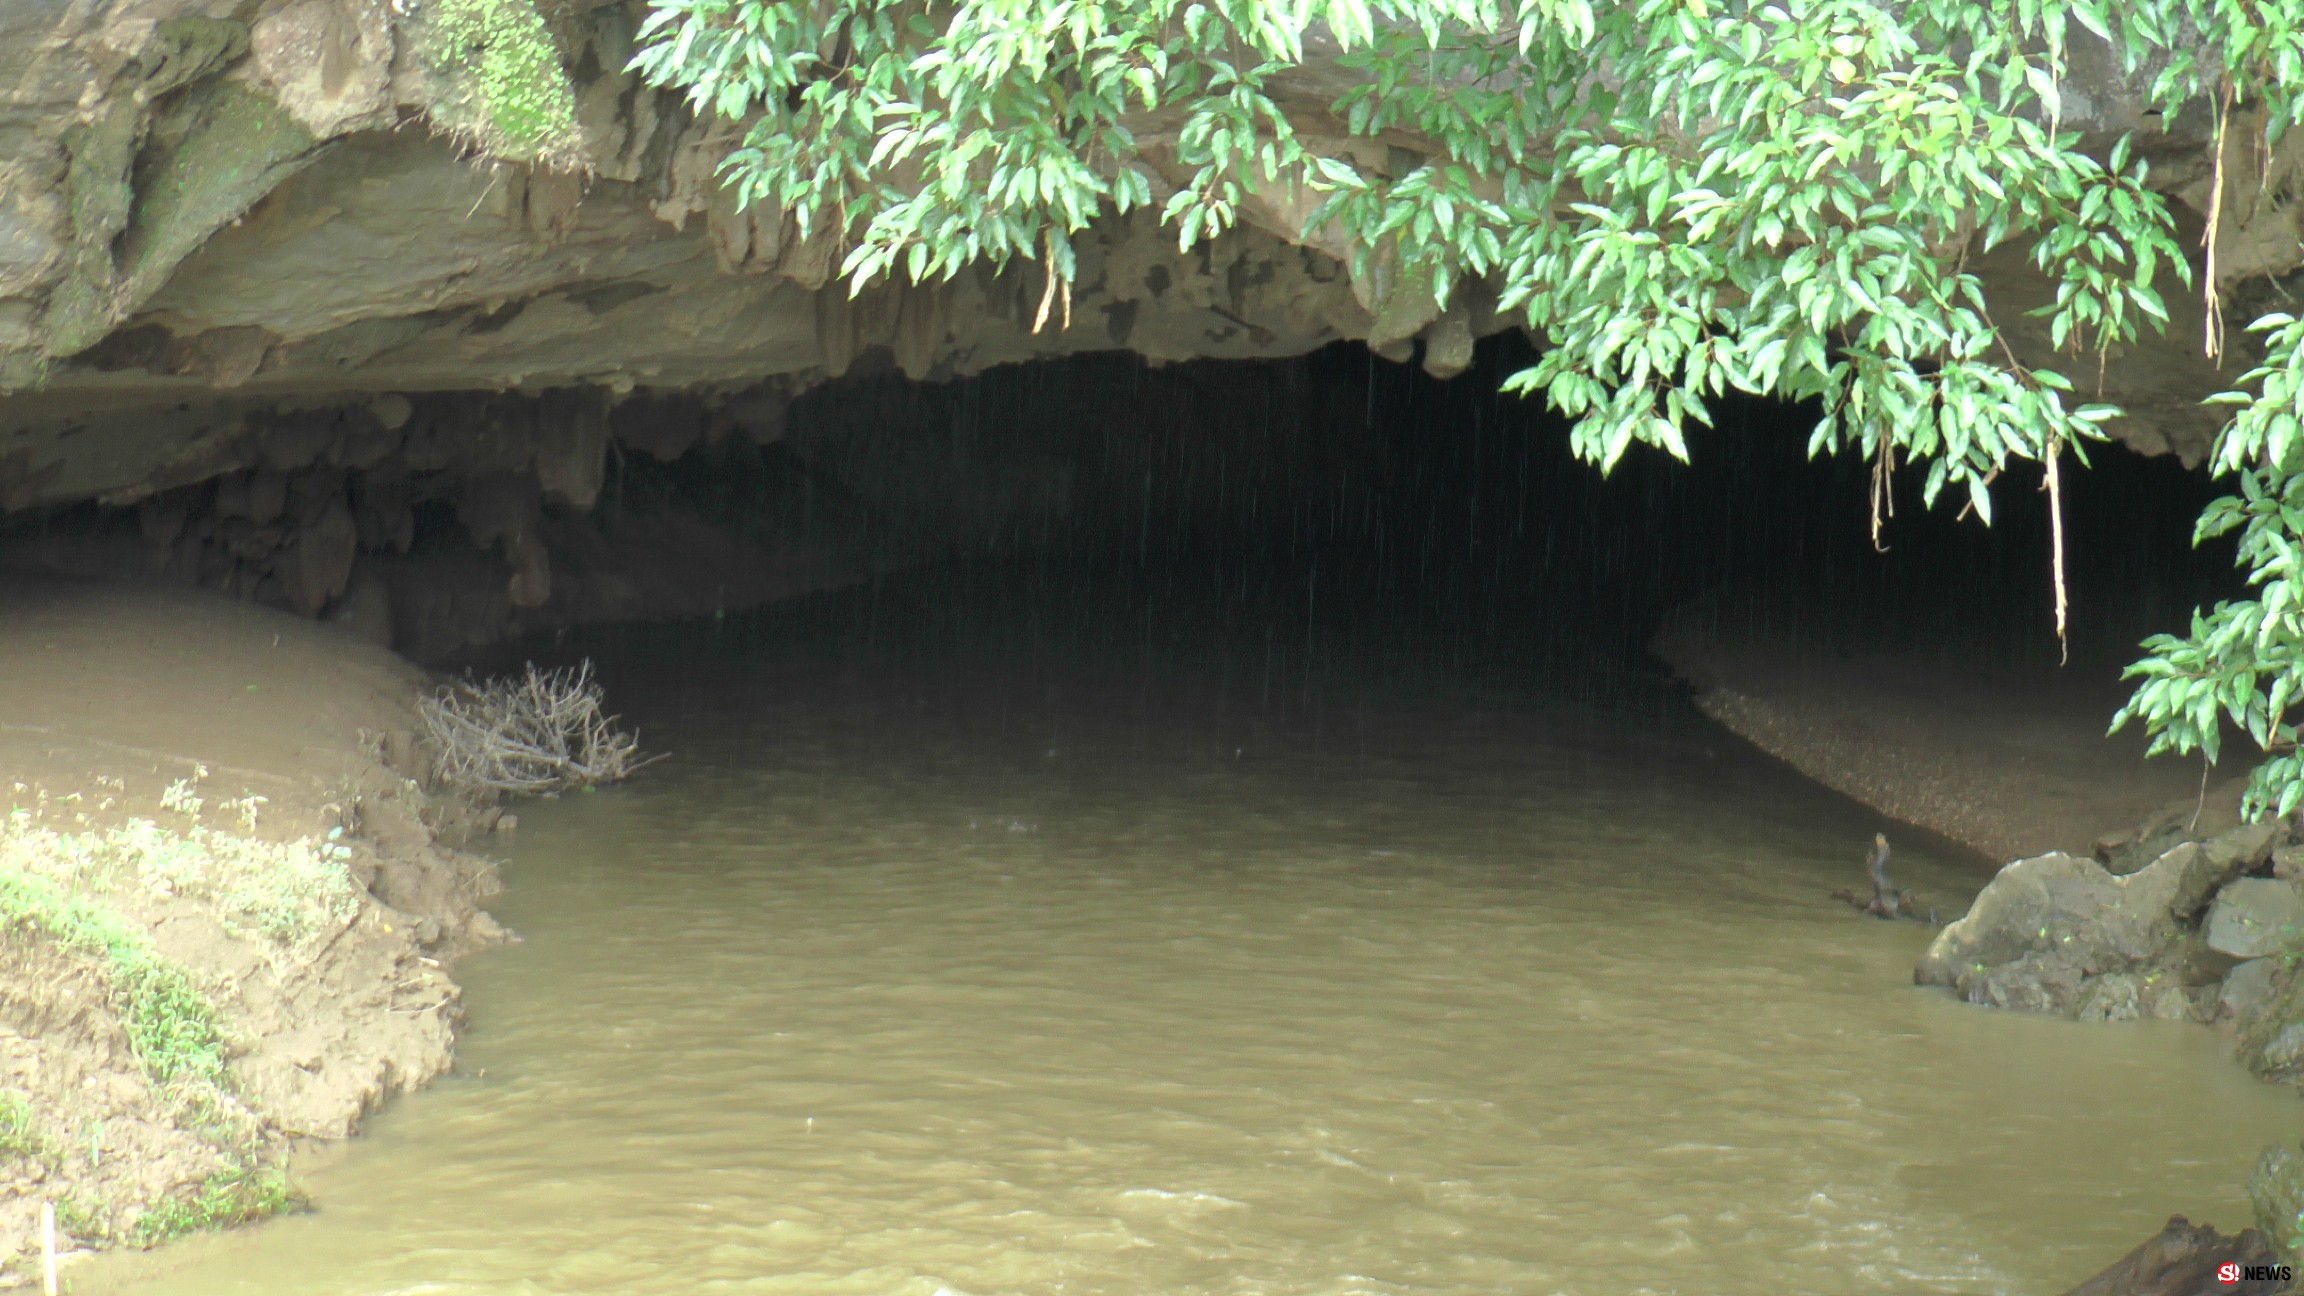 ด่วน! จนท.สั่งปิดถ้ำแม่อุสุ หลังฝนตกน้ำท่วมสูง หวั่นซ้ำรอยถ้ำหลวงเชียงราย   